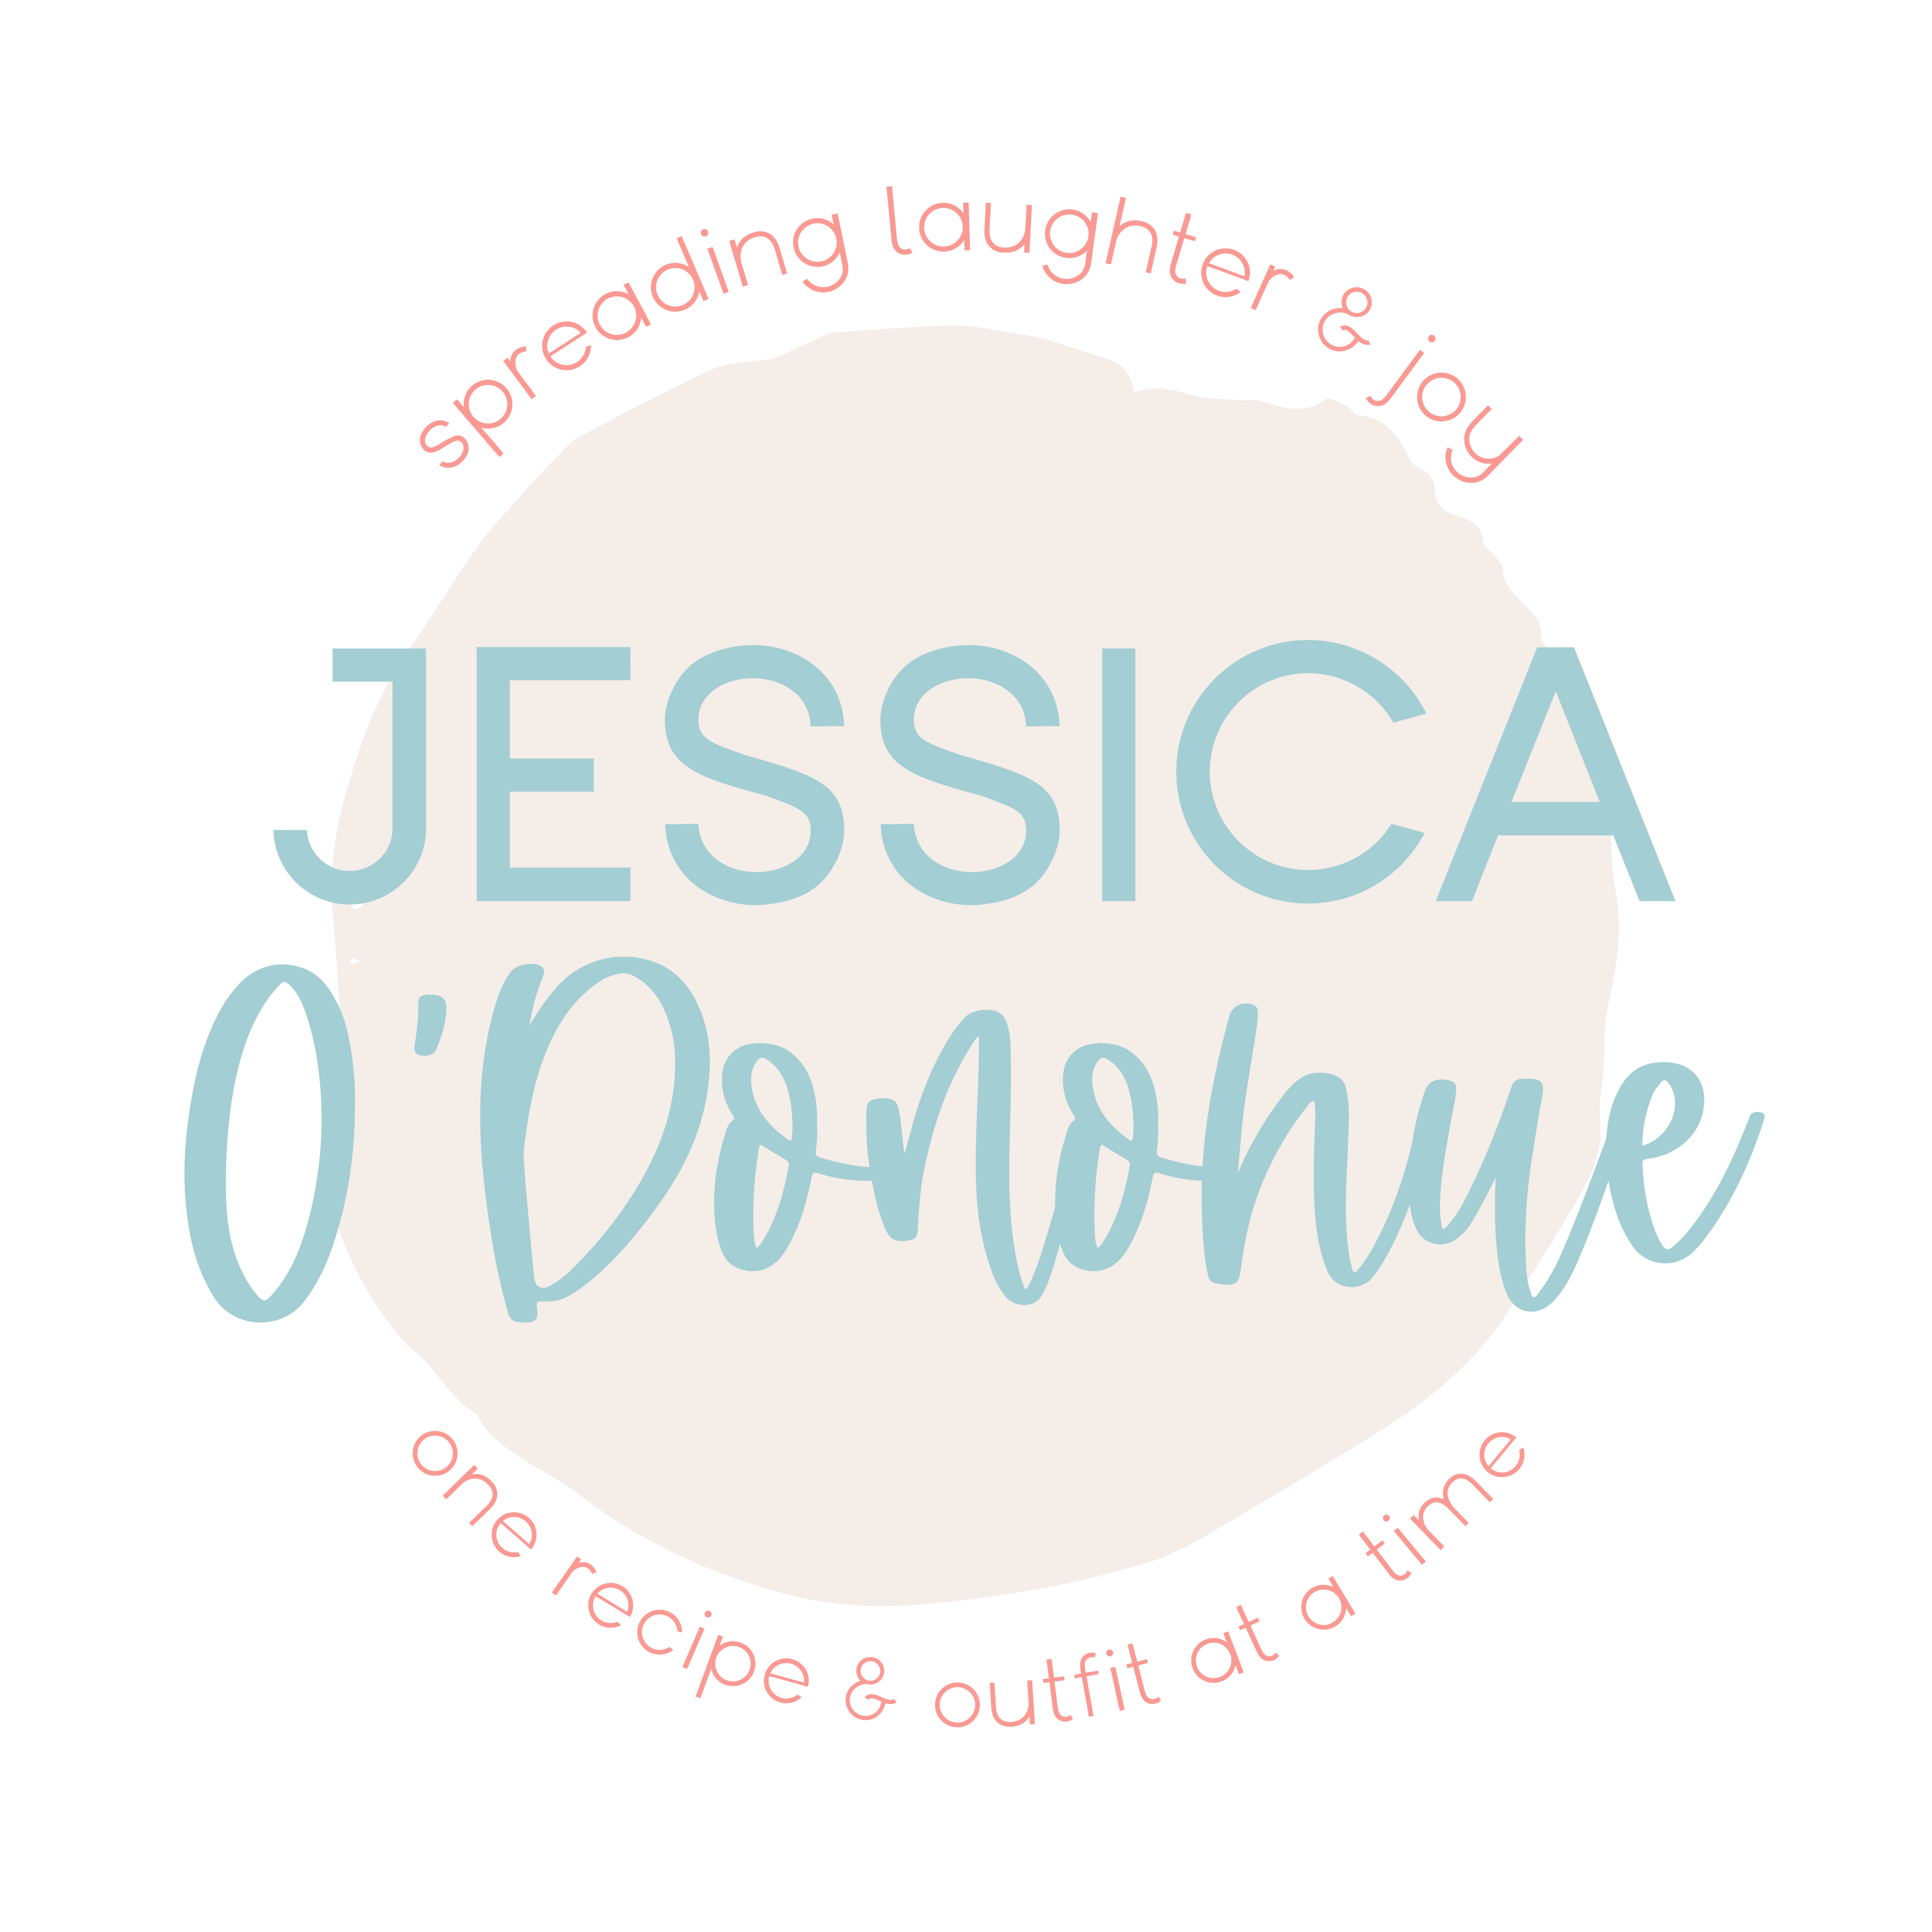 Jessica O'Donohue